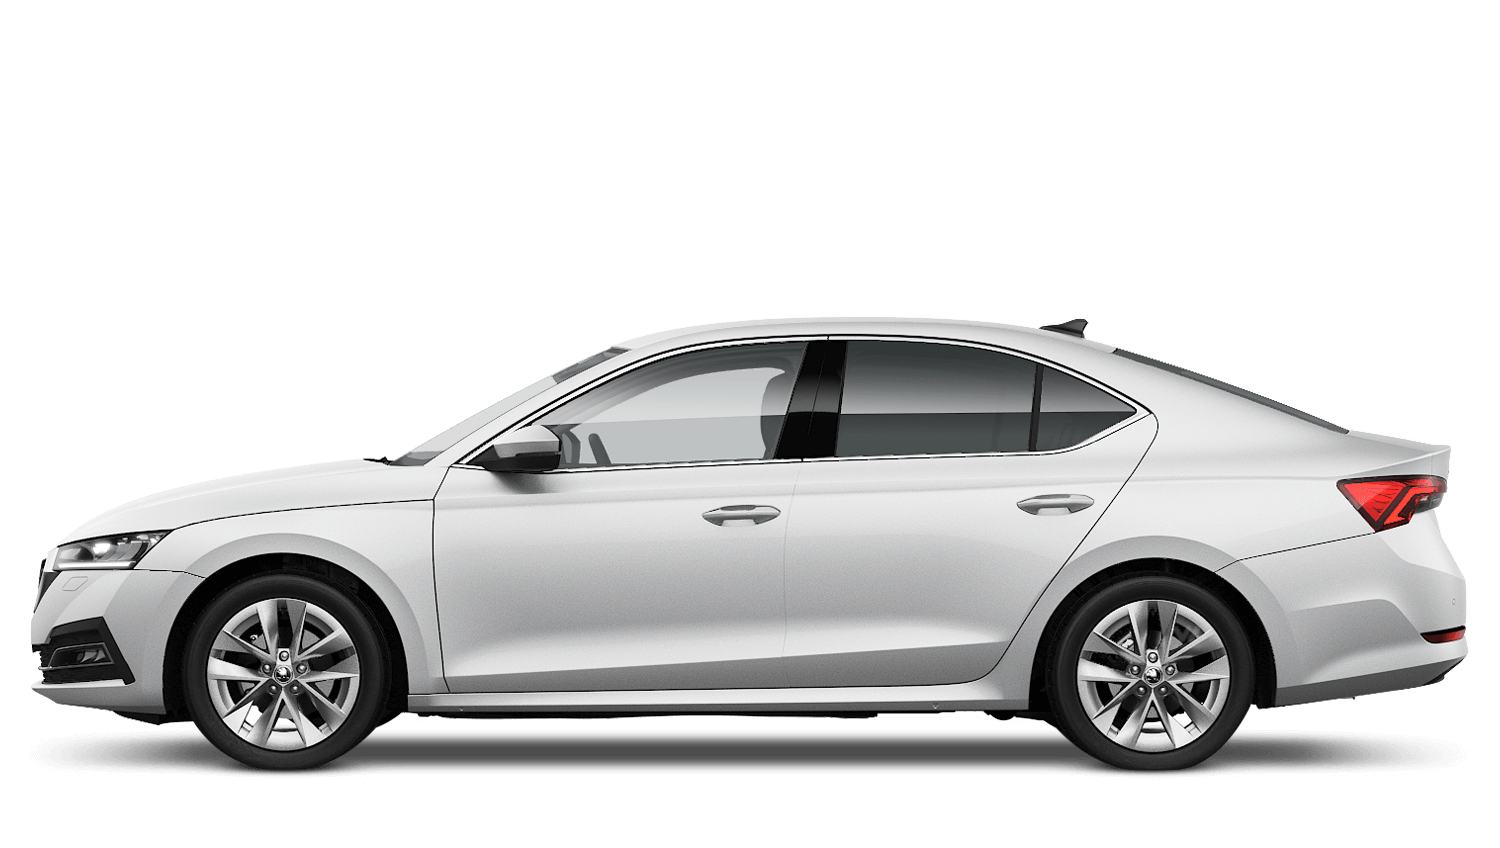  Car Reviews - The Škoda Octavia iV SE L Hatch is